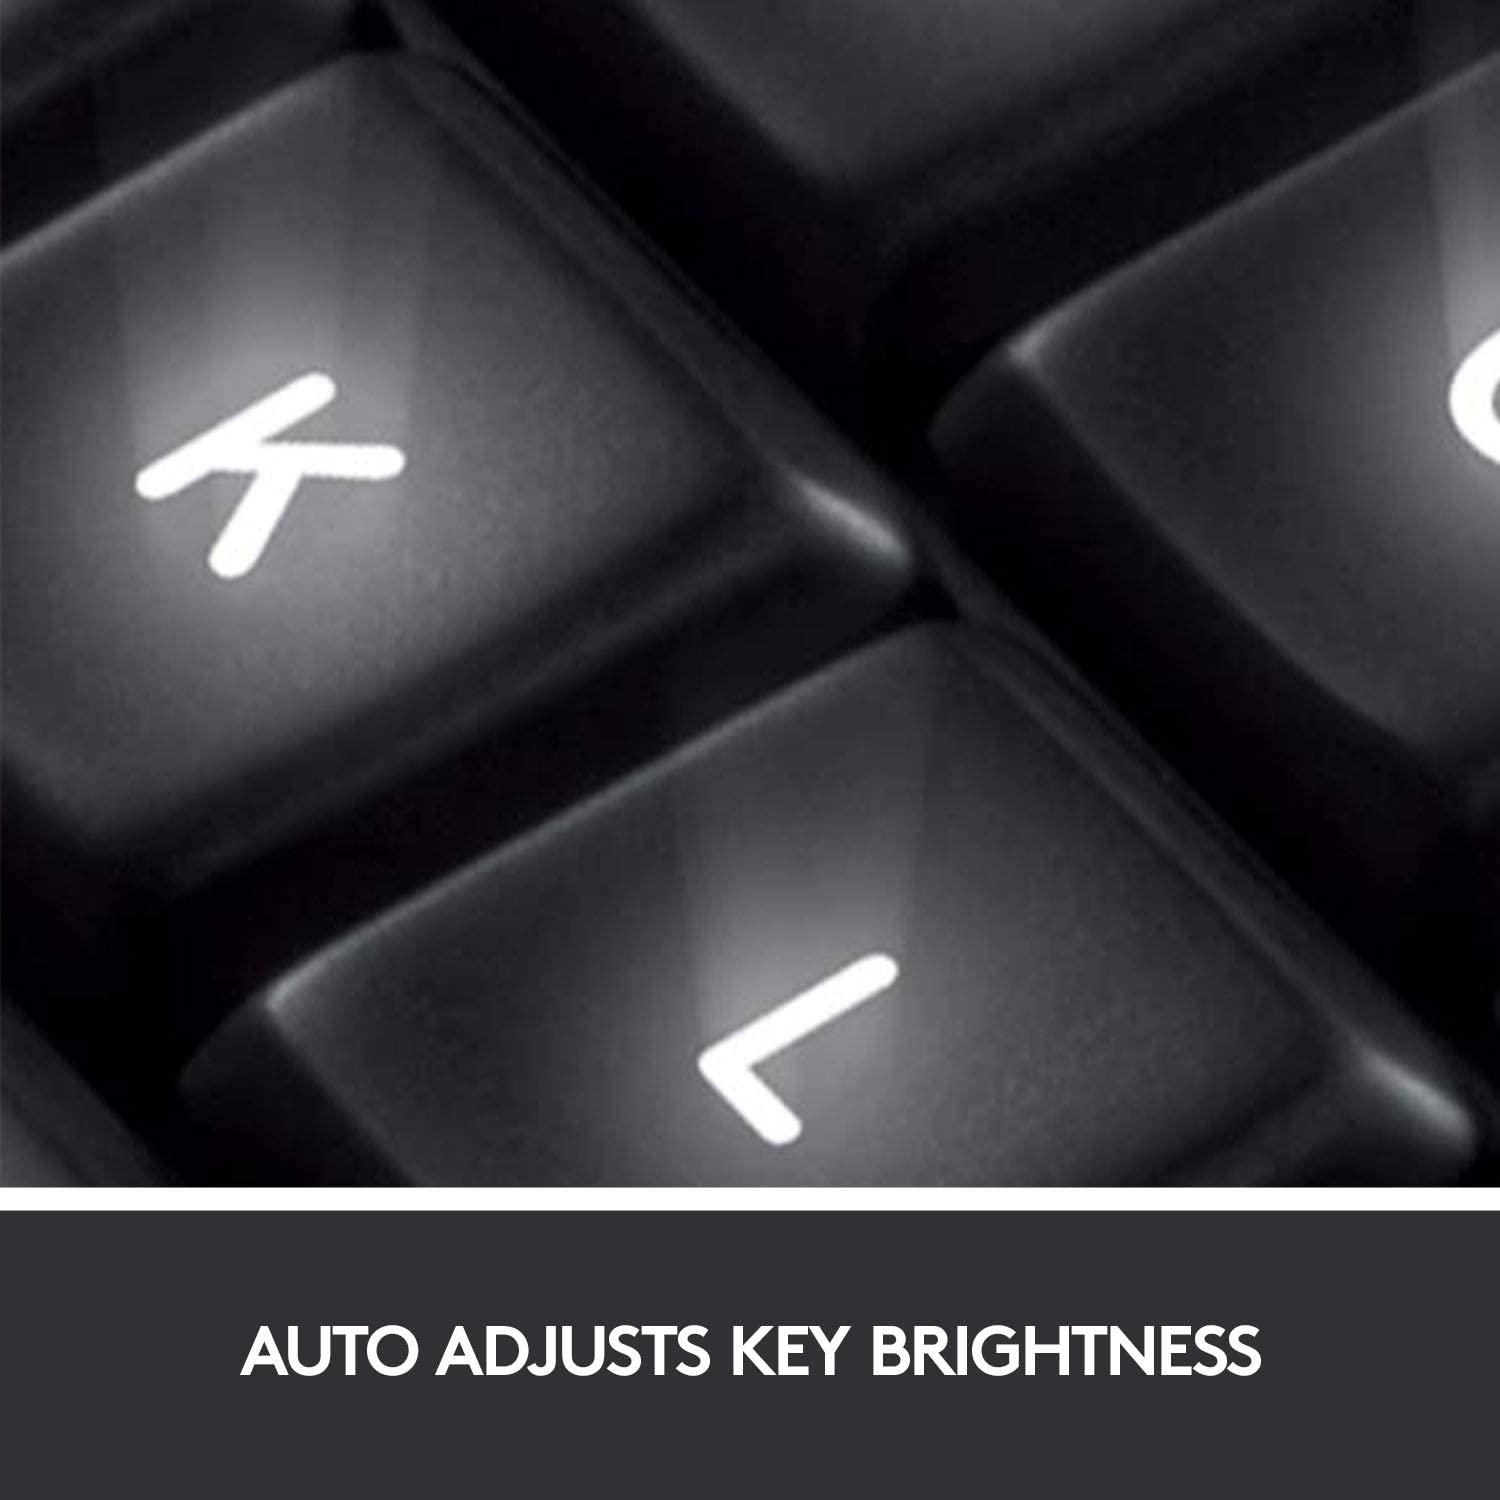 Restored Logitech Wireless Illuminated Keyboard K800 (Refurbished) - image 4 of 9